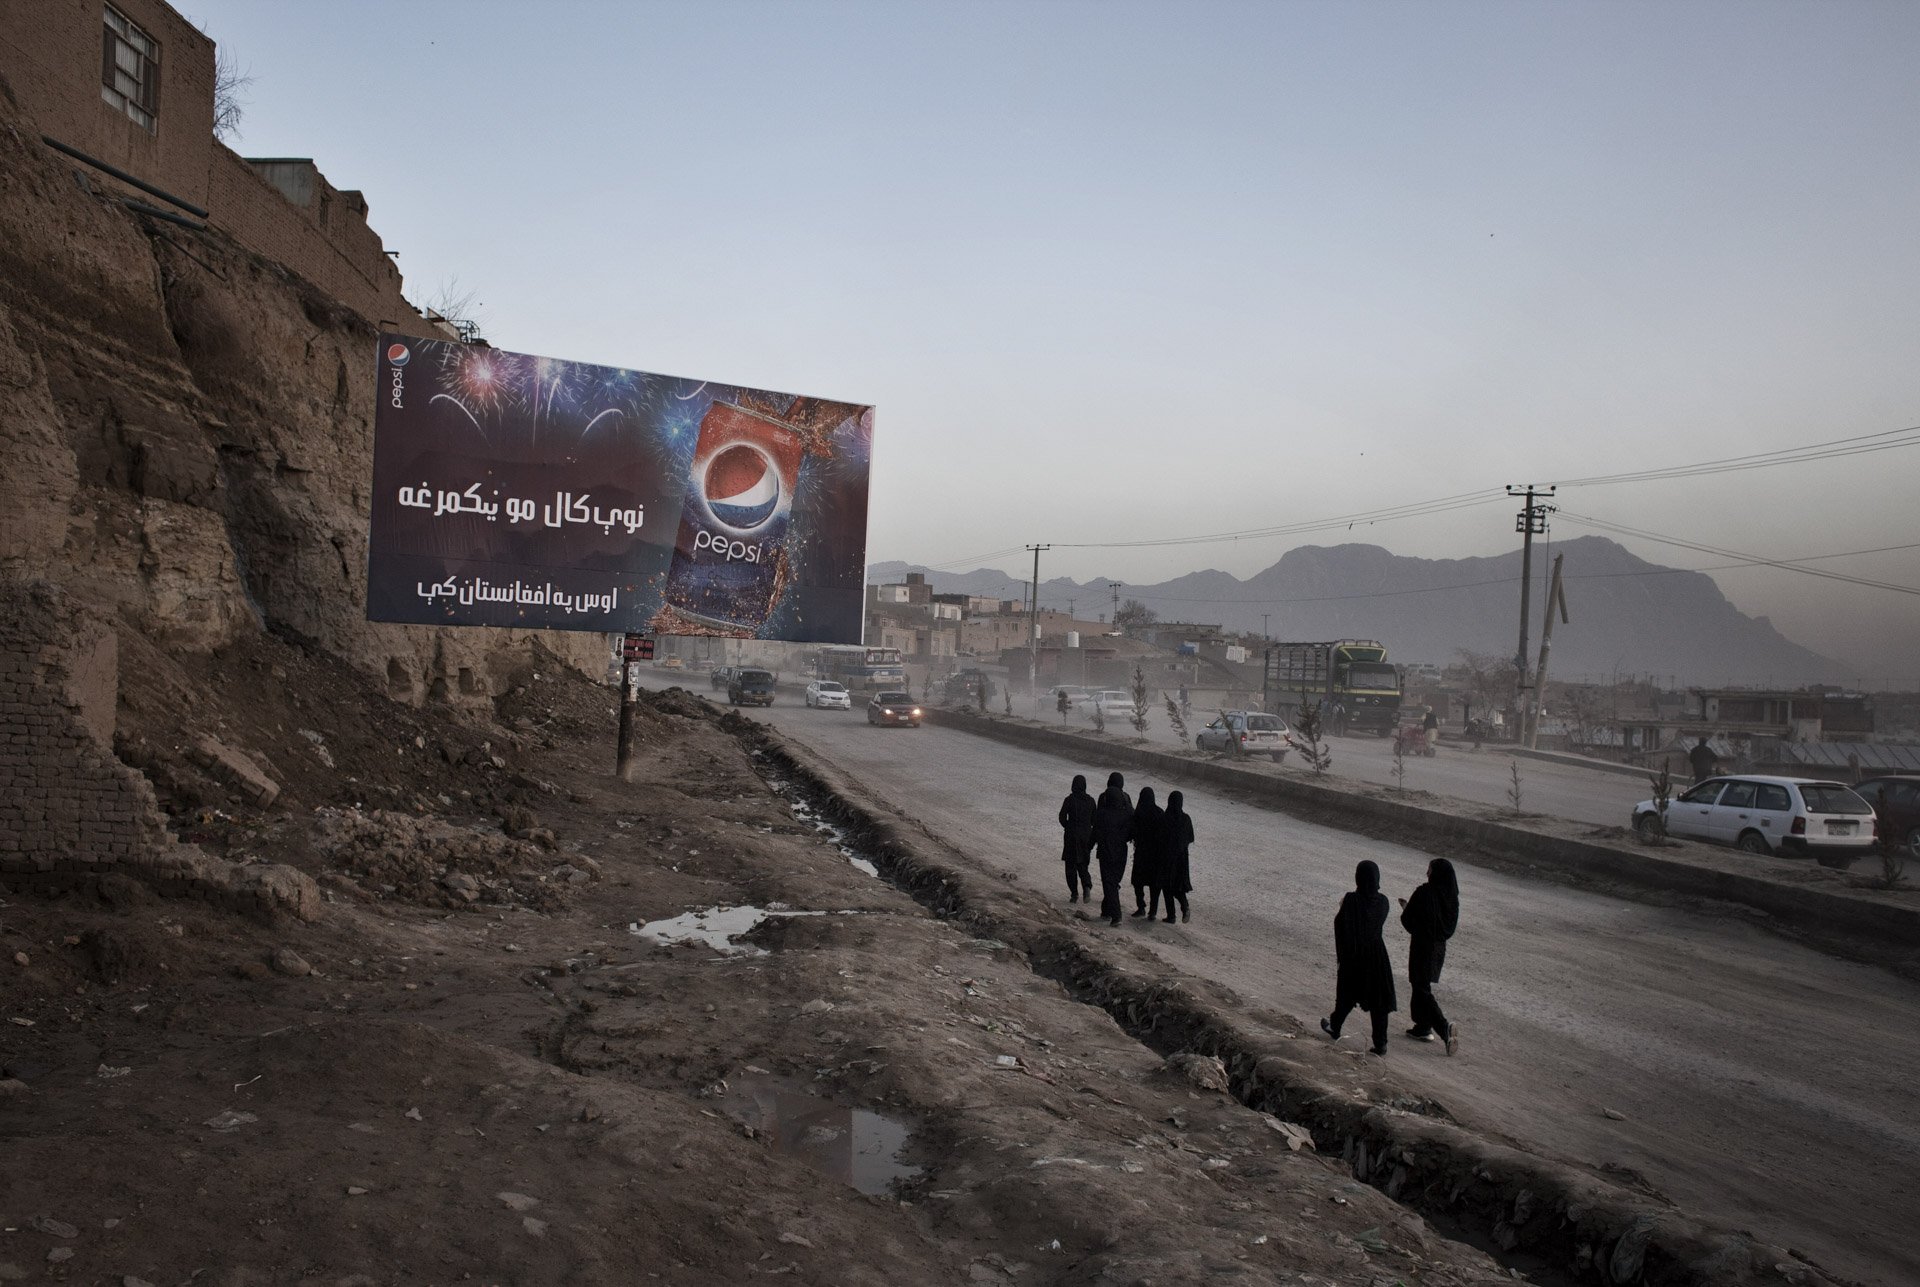  Kart-e Naw, littéralement les “Nouveaux Quartiers”, en banlieue Est de la ville. Kaboul, Afghanistan 2012 